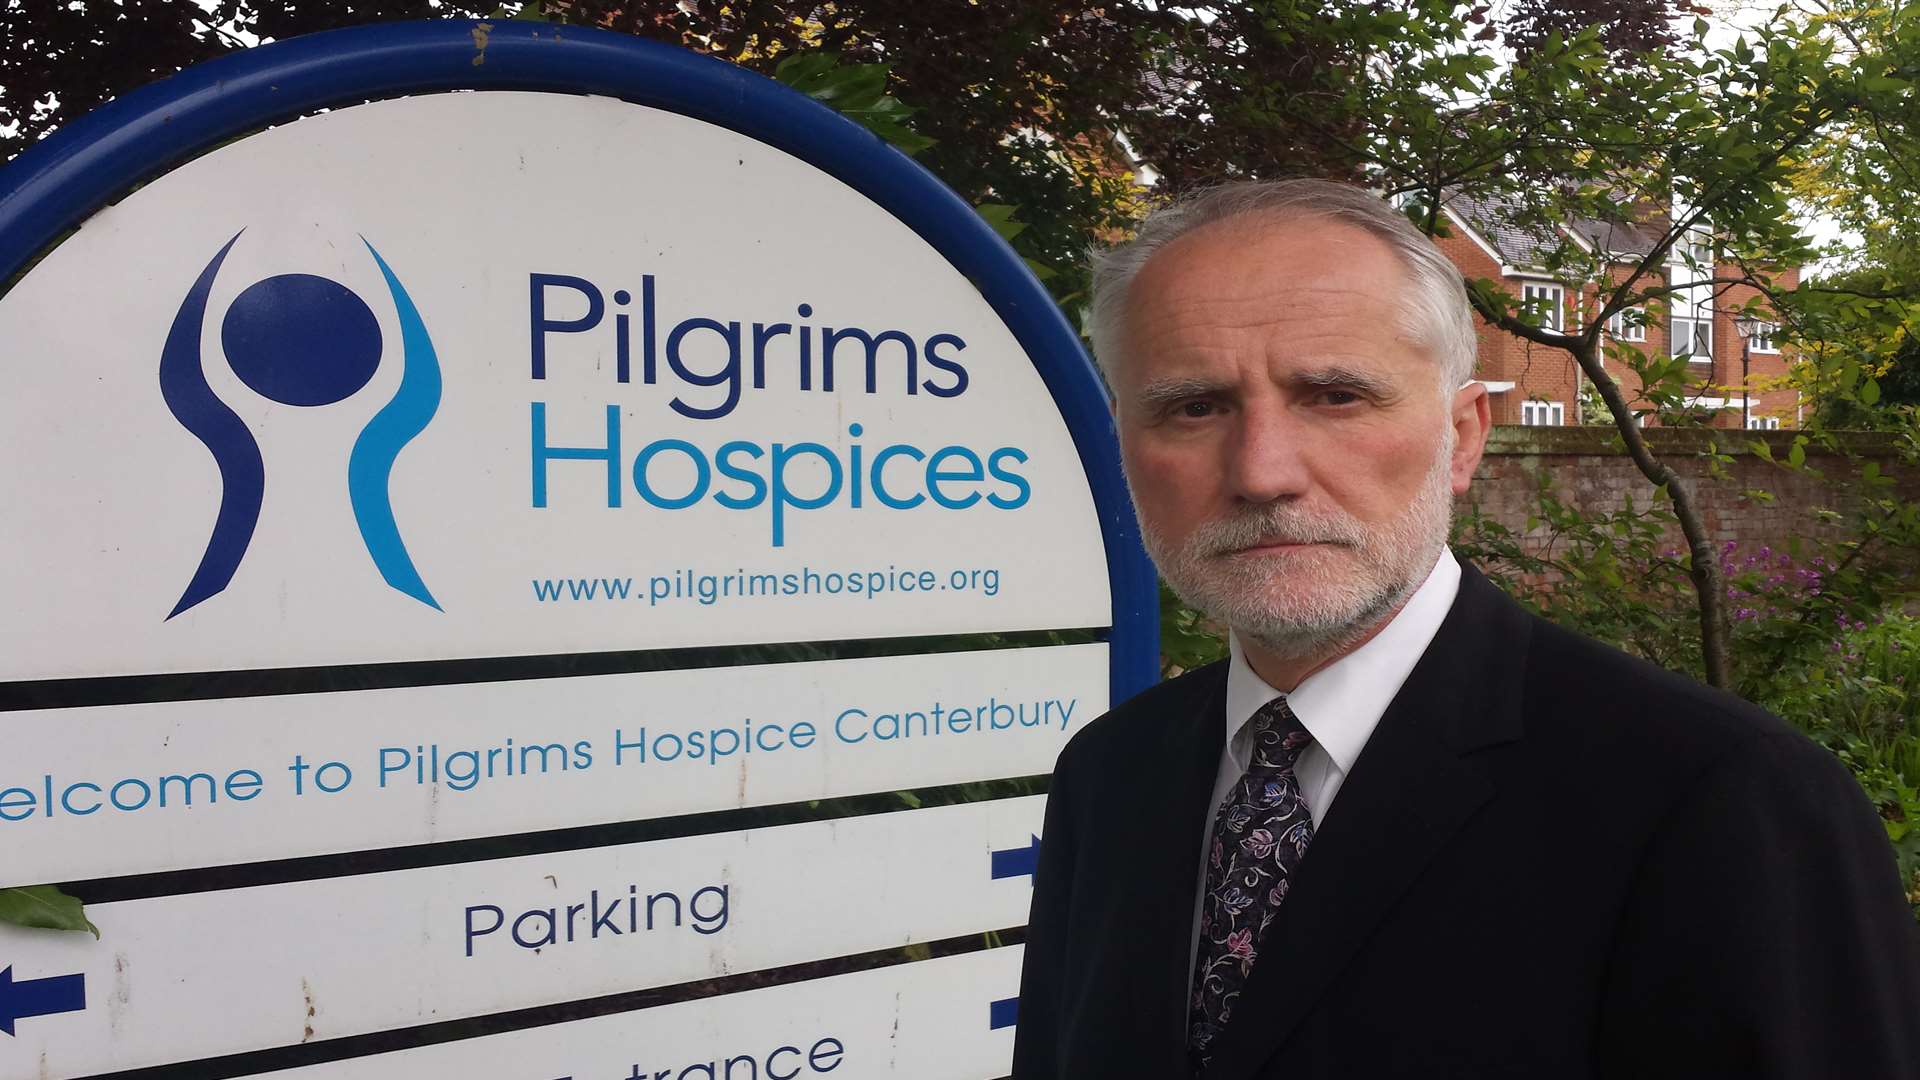 Pilgrims Hospices chief executive Steve Auty